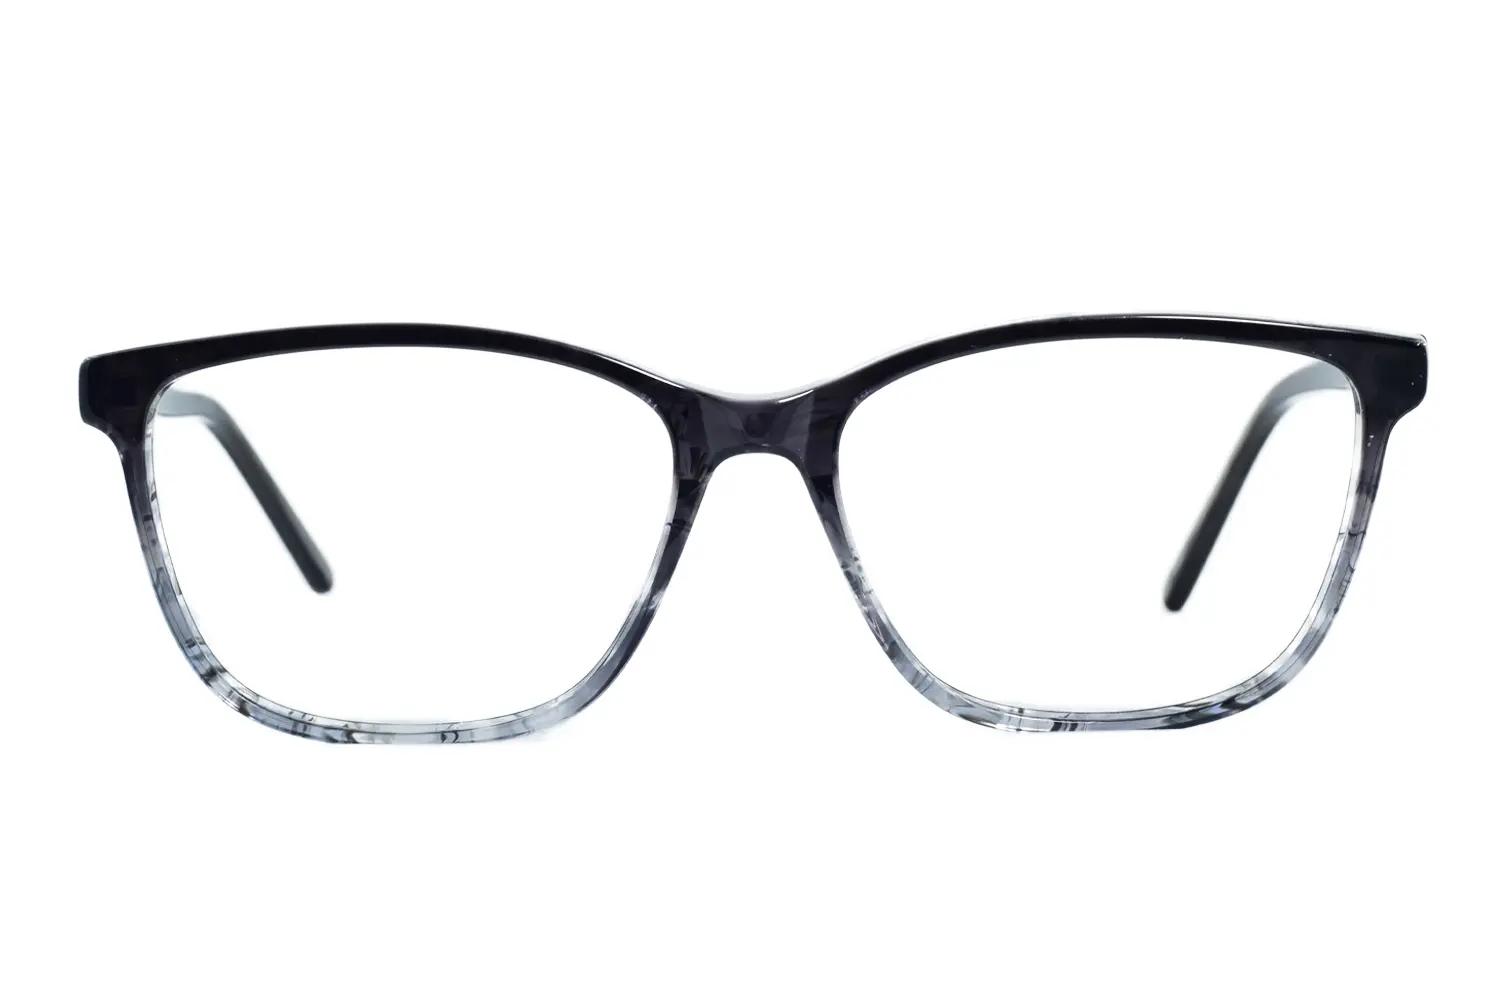 عینک طبی KENZO مدل G1005 C5 - دکترعینک